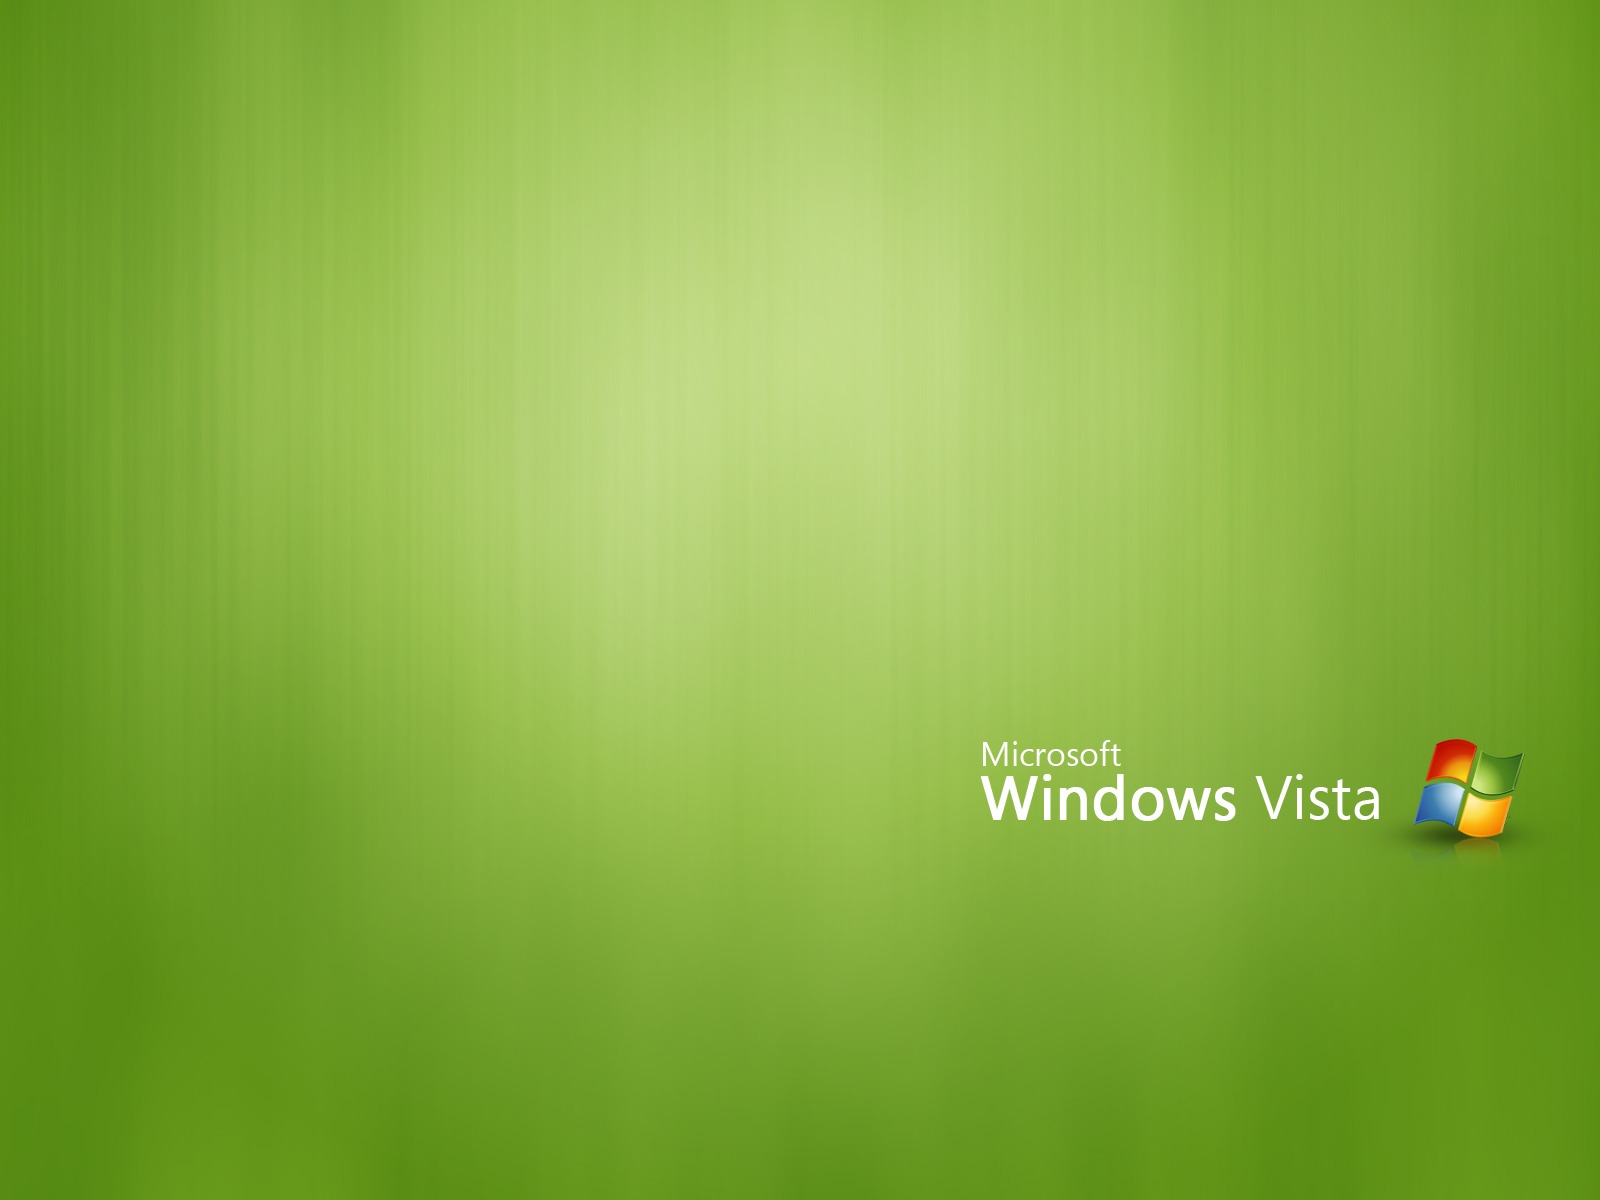 Hình nền Windows Vista màu xanh lá cây sẽ mang đến cho bạn không gian làm việc cảm giác tươi mới và thư giãn. Hãy click để xem hình ảnh liên quan và cập nhật cho máy tính của bạn một sắc xanh mới lạ!